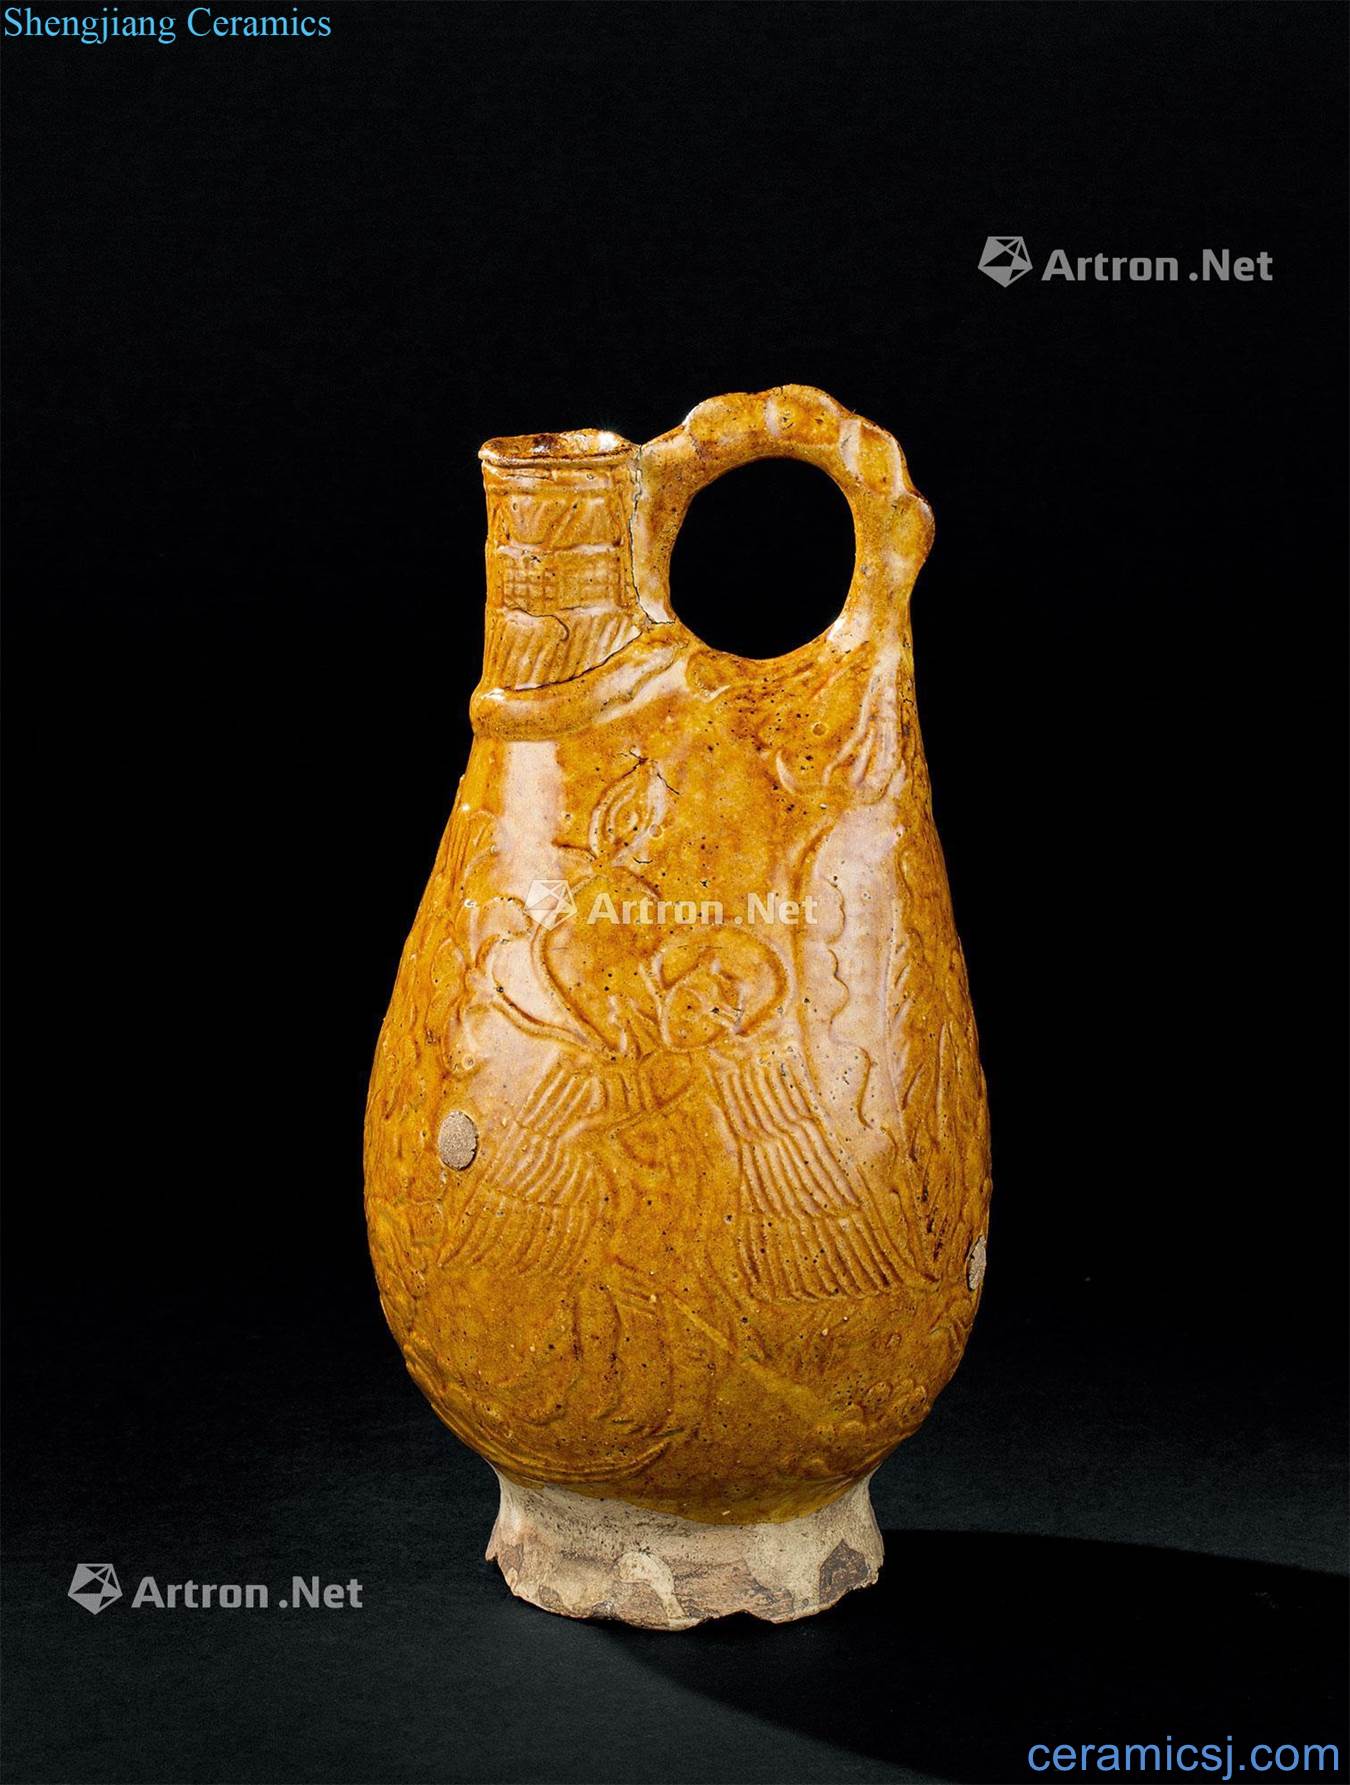 Liao dynasty (916-1125), yellow glazed pot of skins